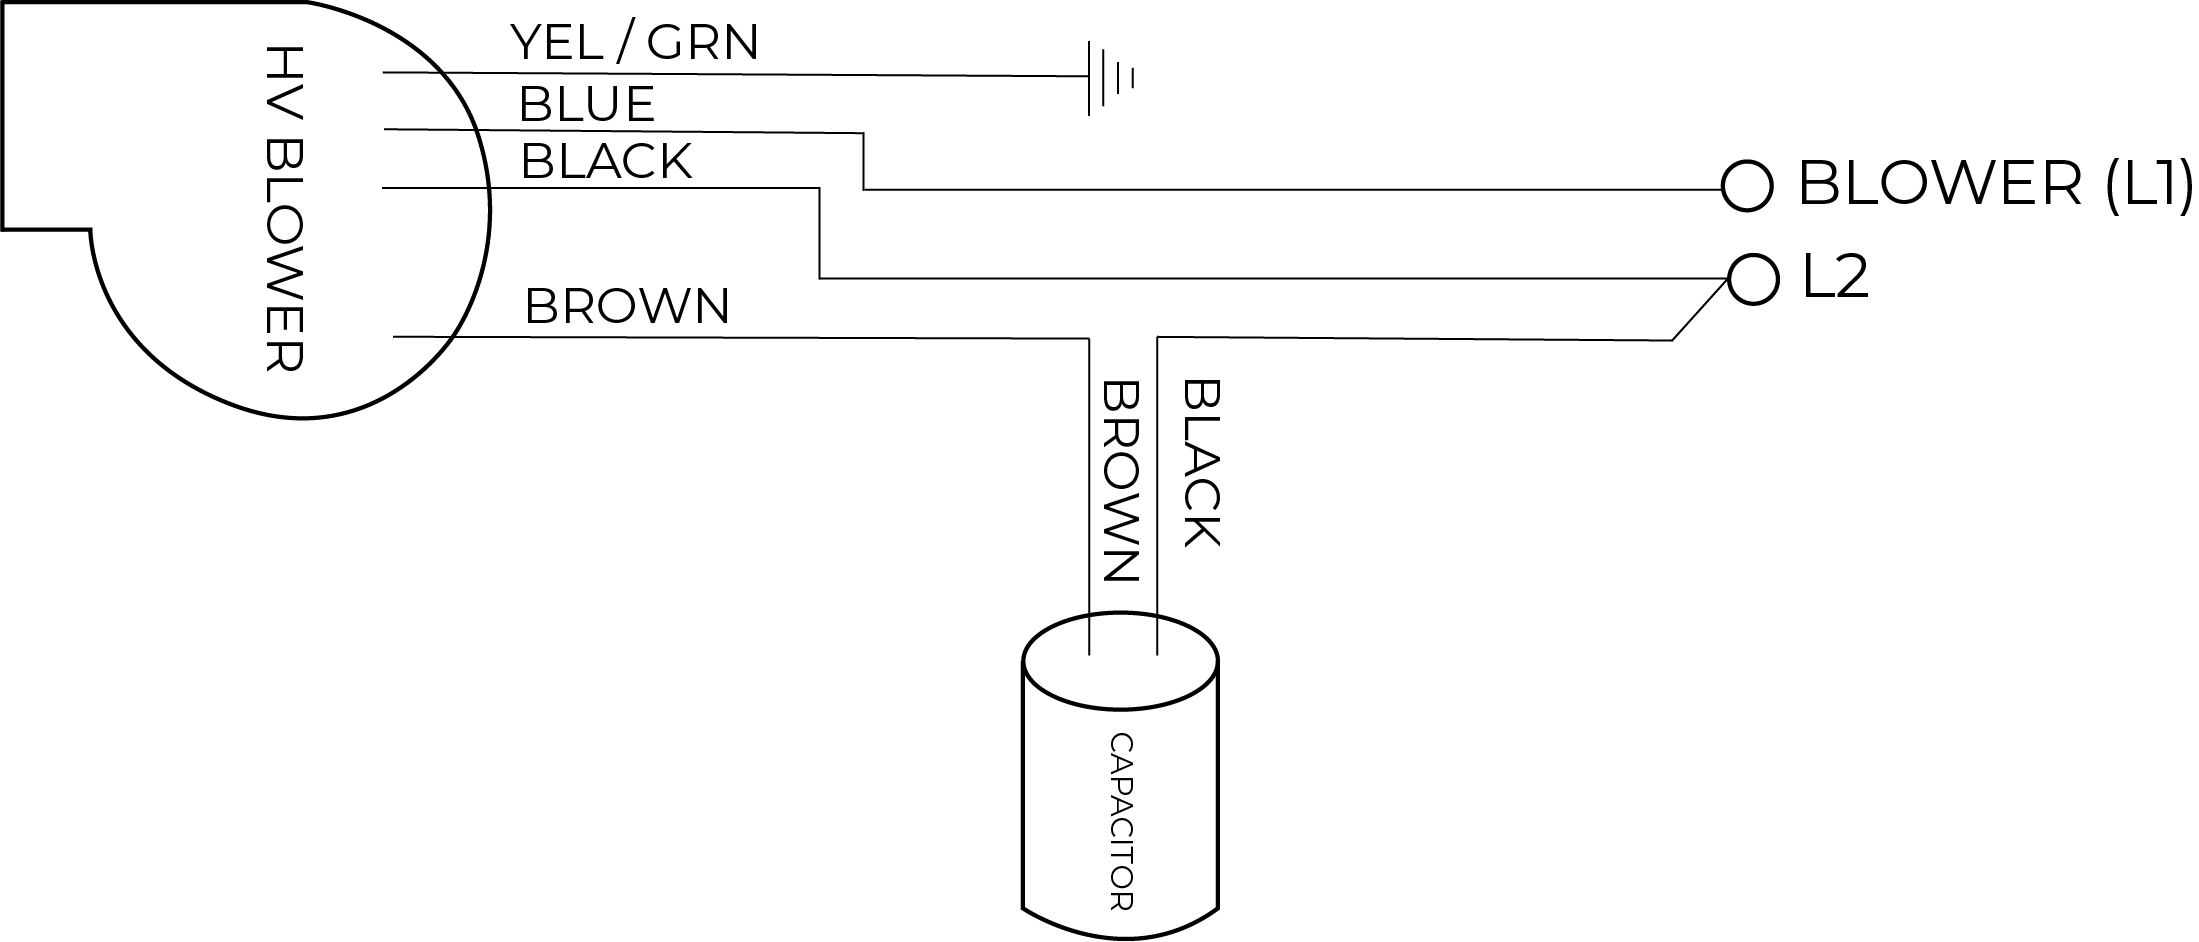 Blower Diagram (1).png